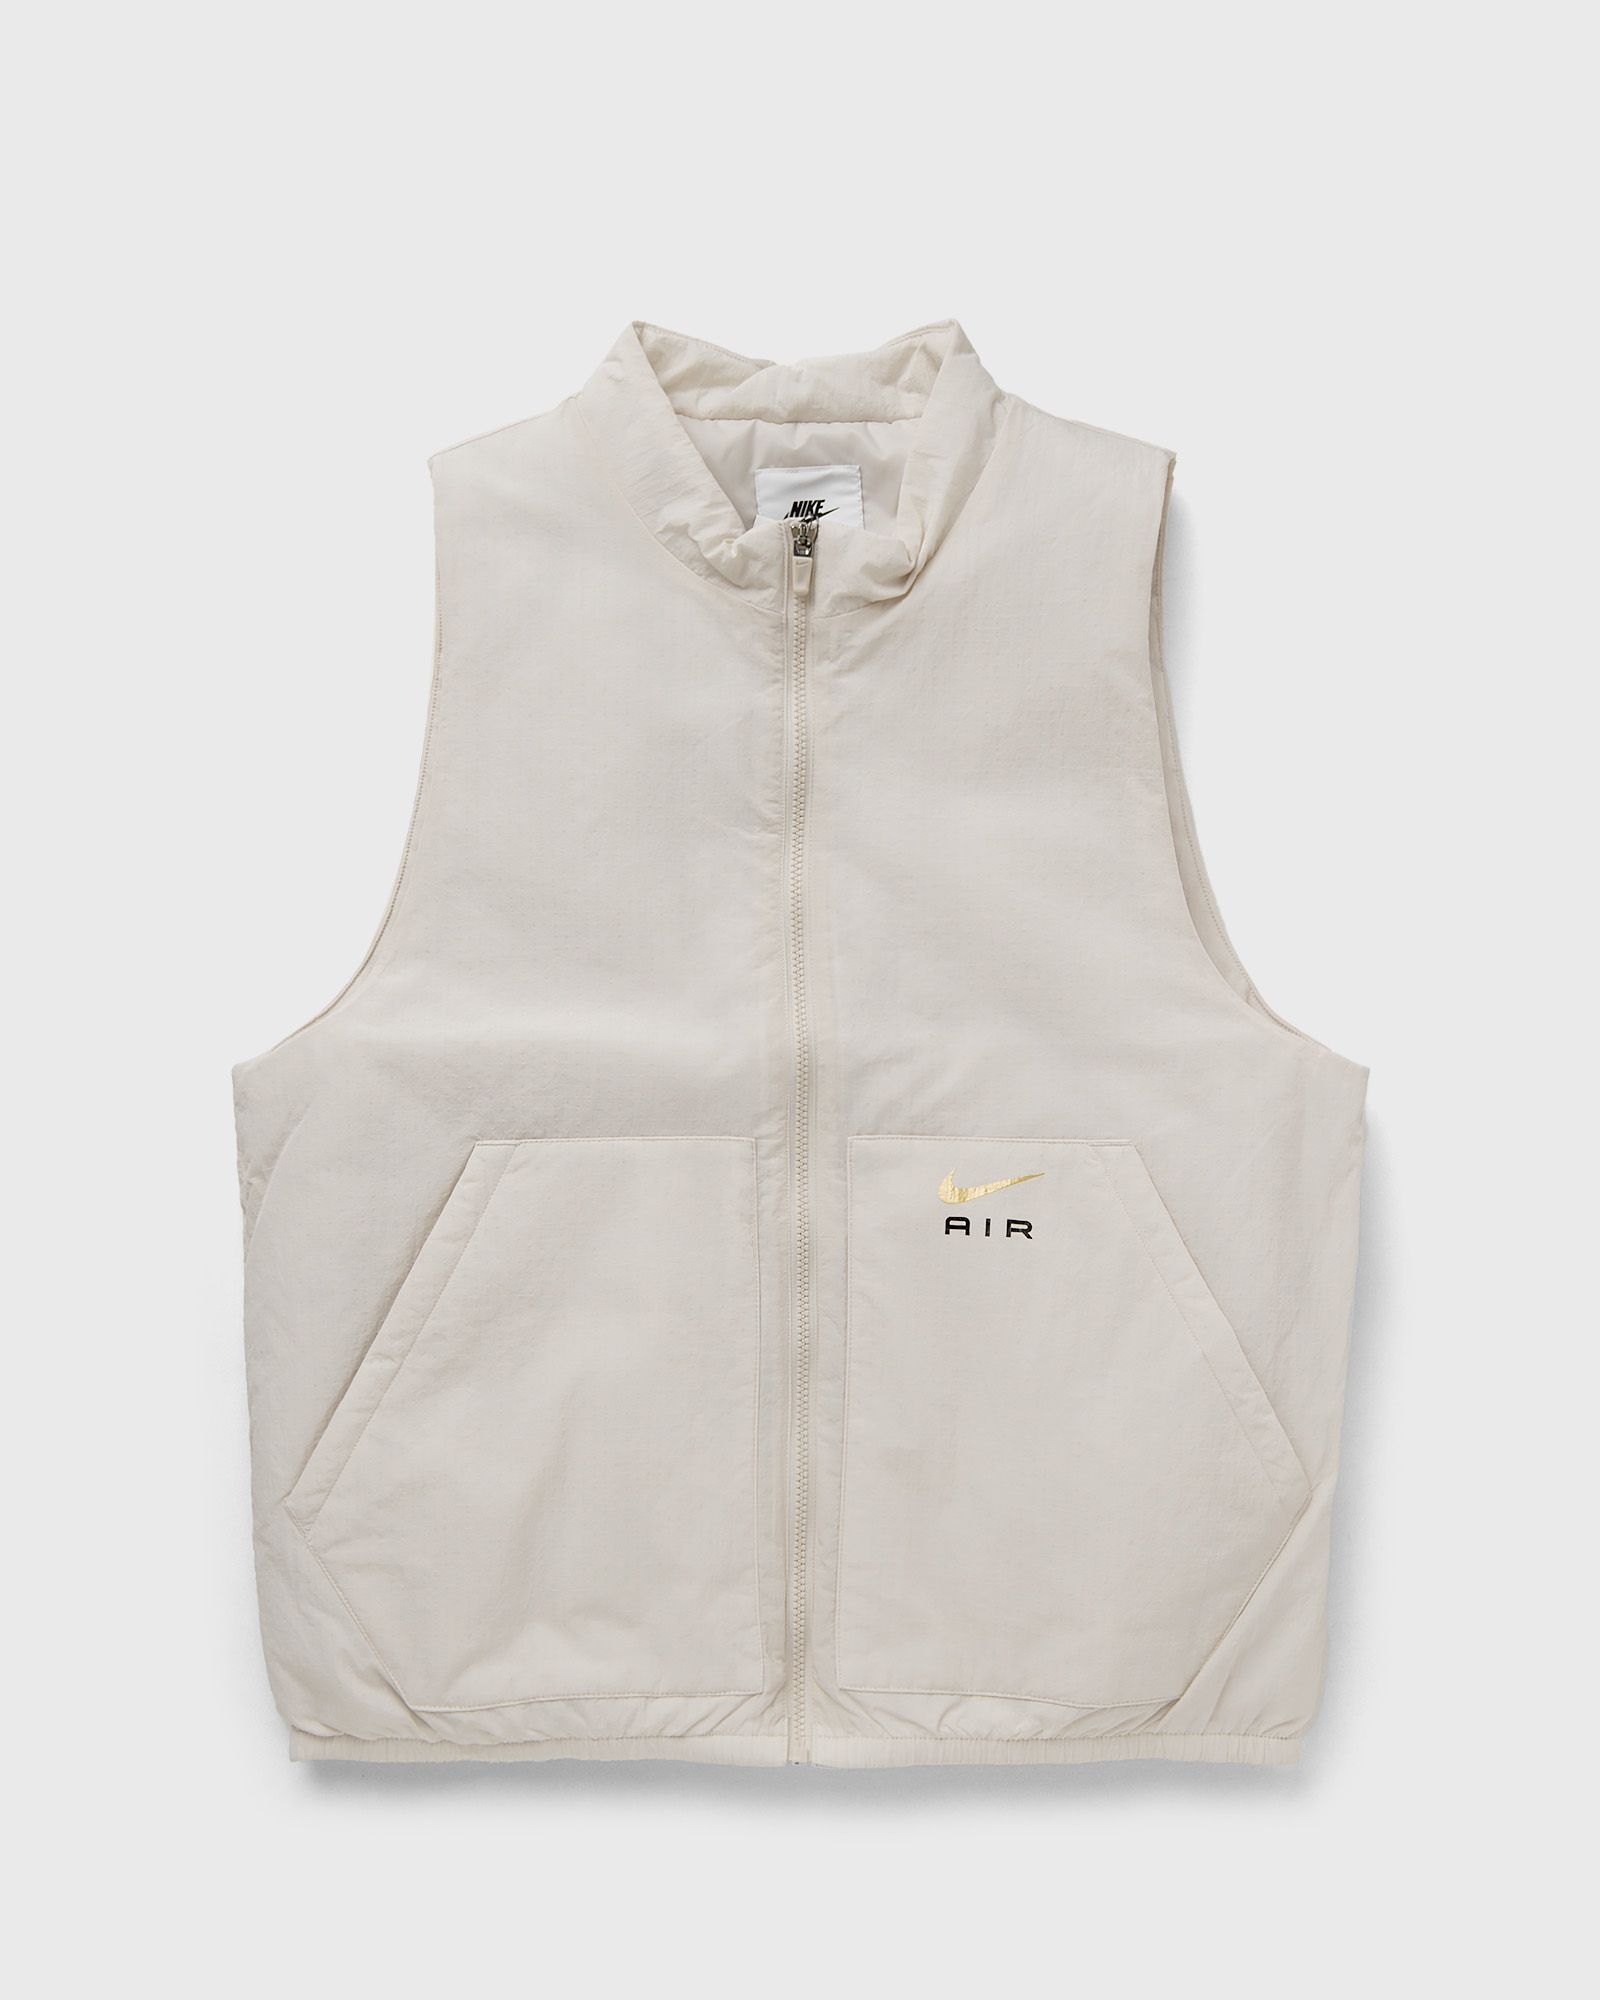 Nike - air insulated woven vest men vests beige in größe:xxl